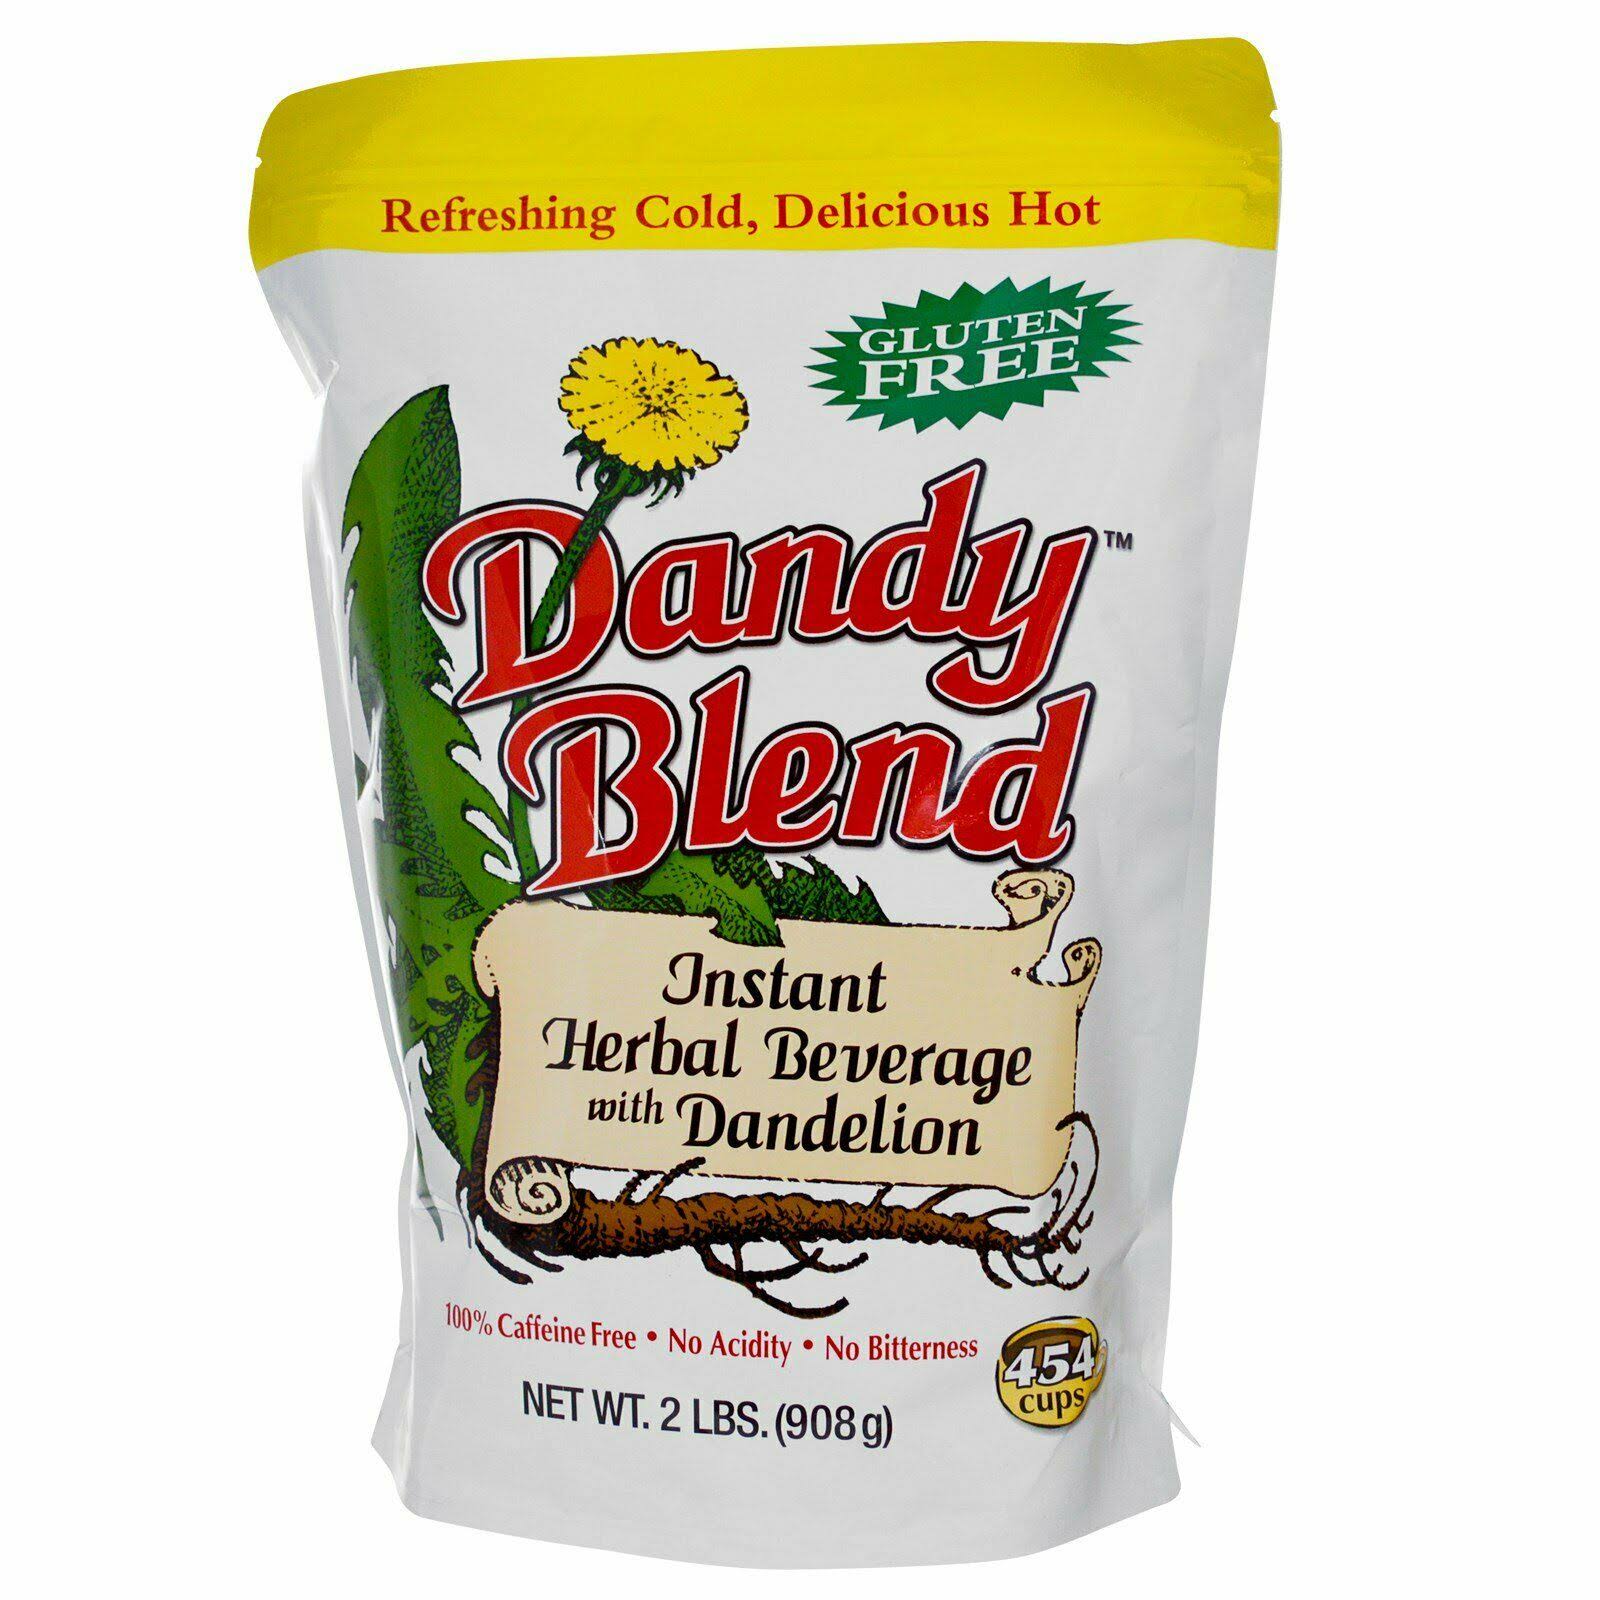 Dandy Blend Instant Herbal Beverage - with Dandelion, 2lbs